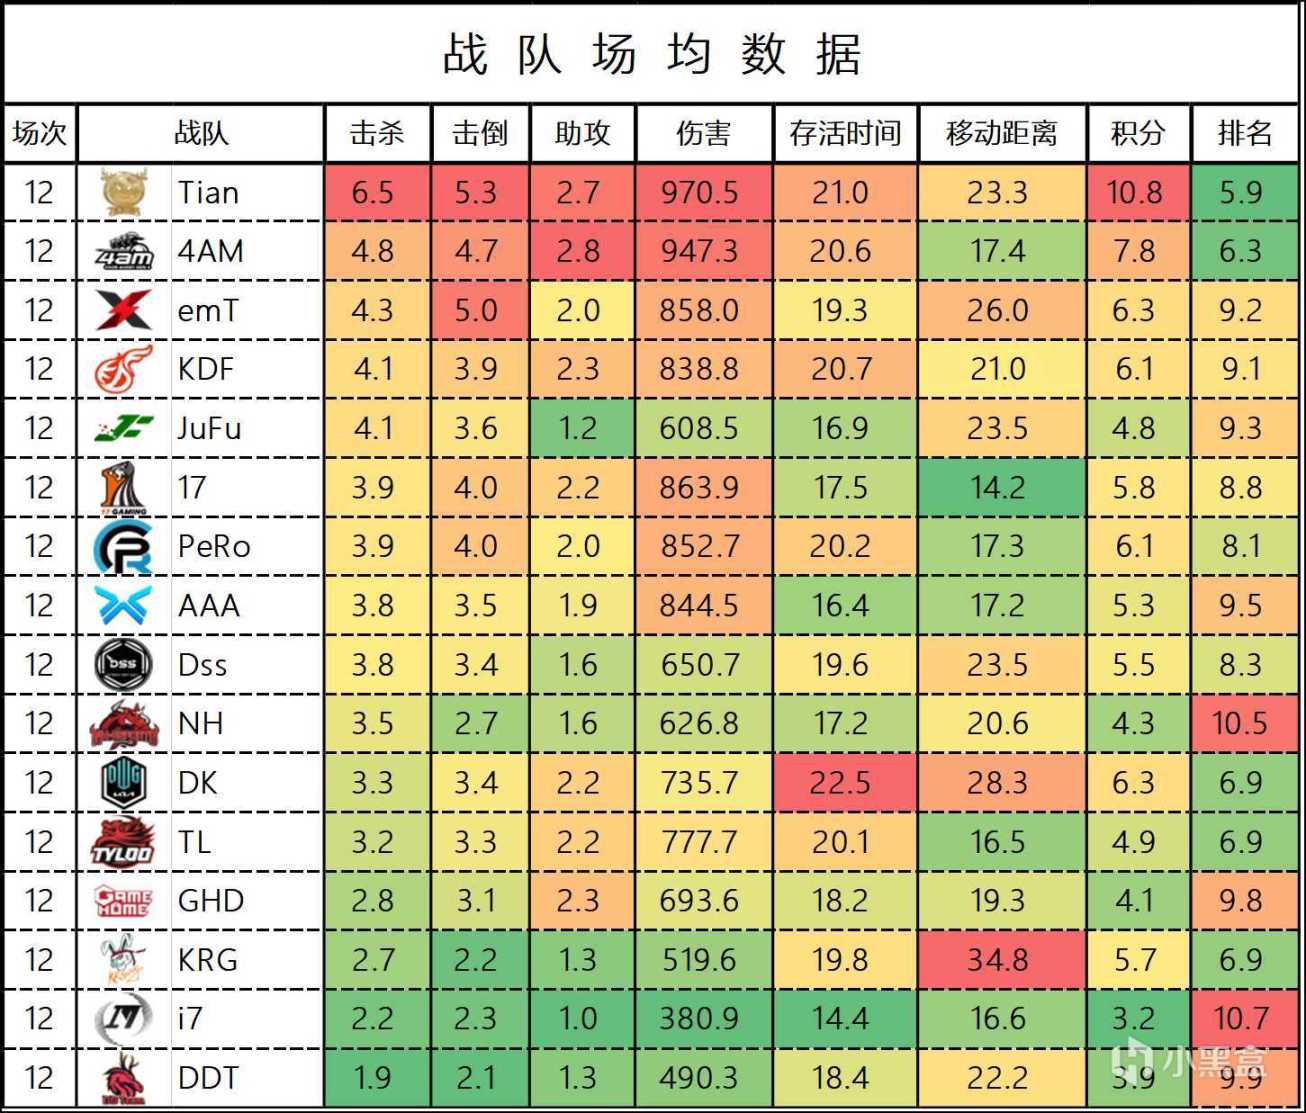 【数据流】BPC决赛上半程数据，Tianba130分领跑积分榜-第3张